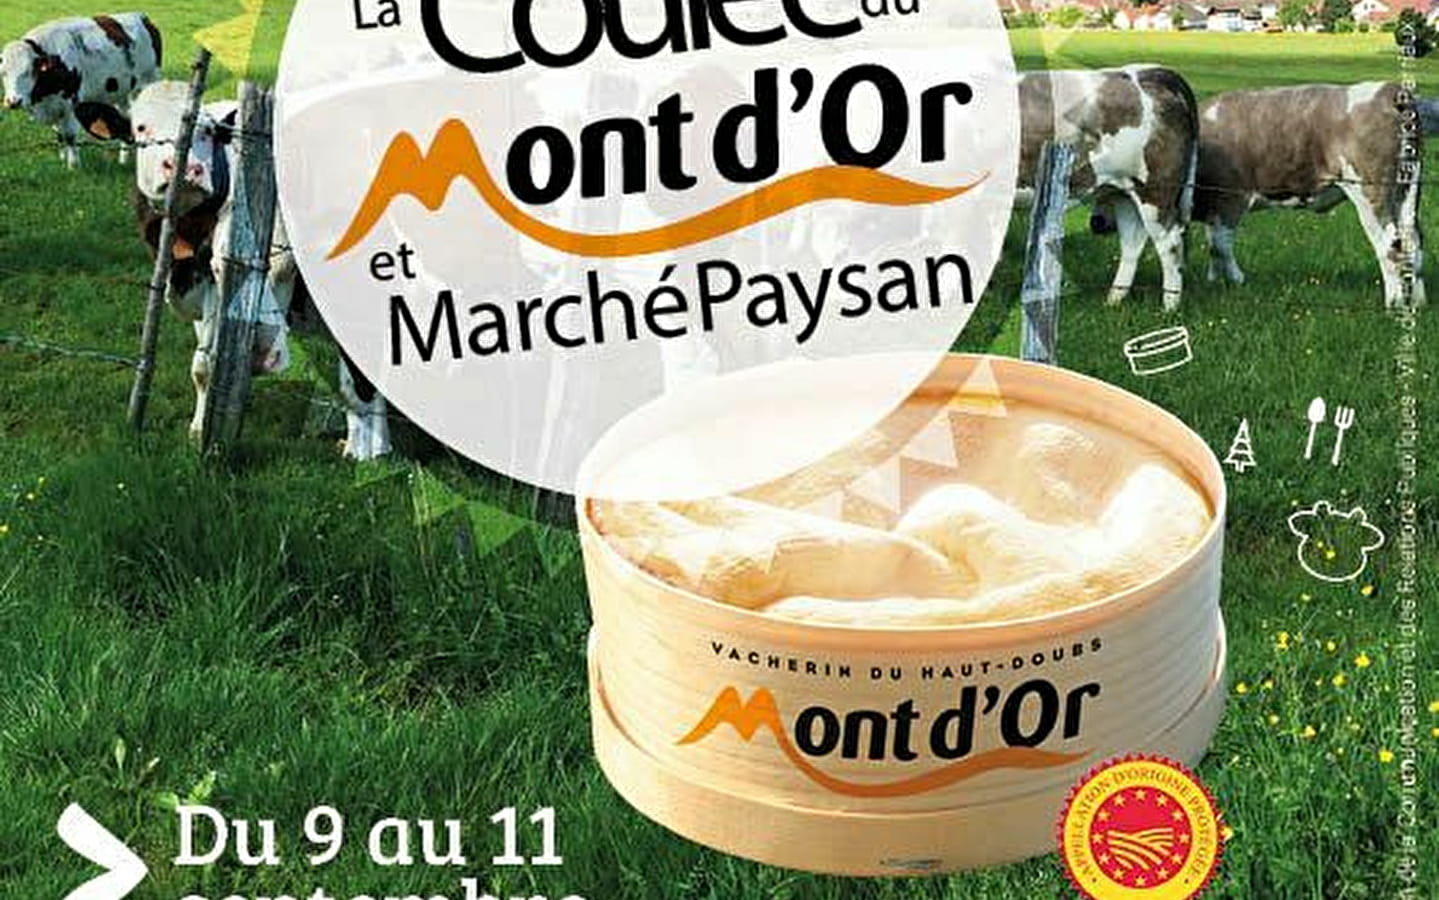 Coulée du Mont d'Or und Bauernmarkt